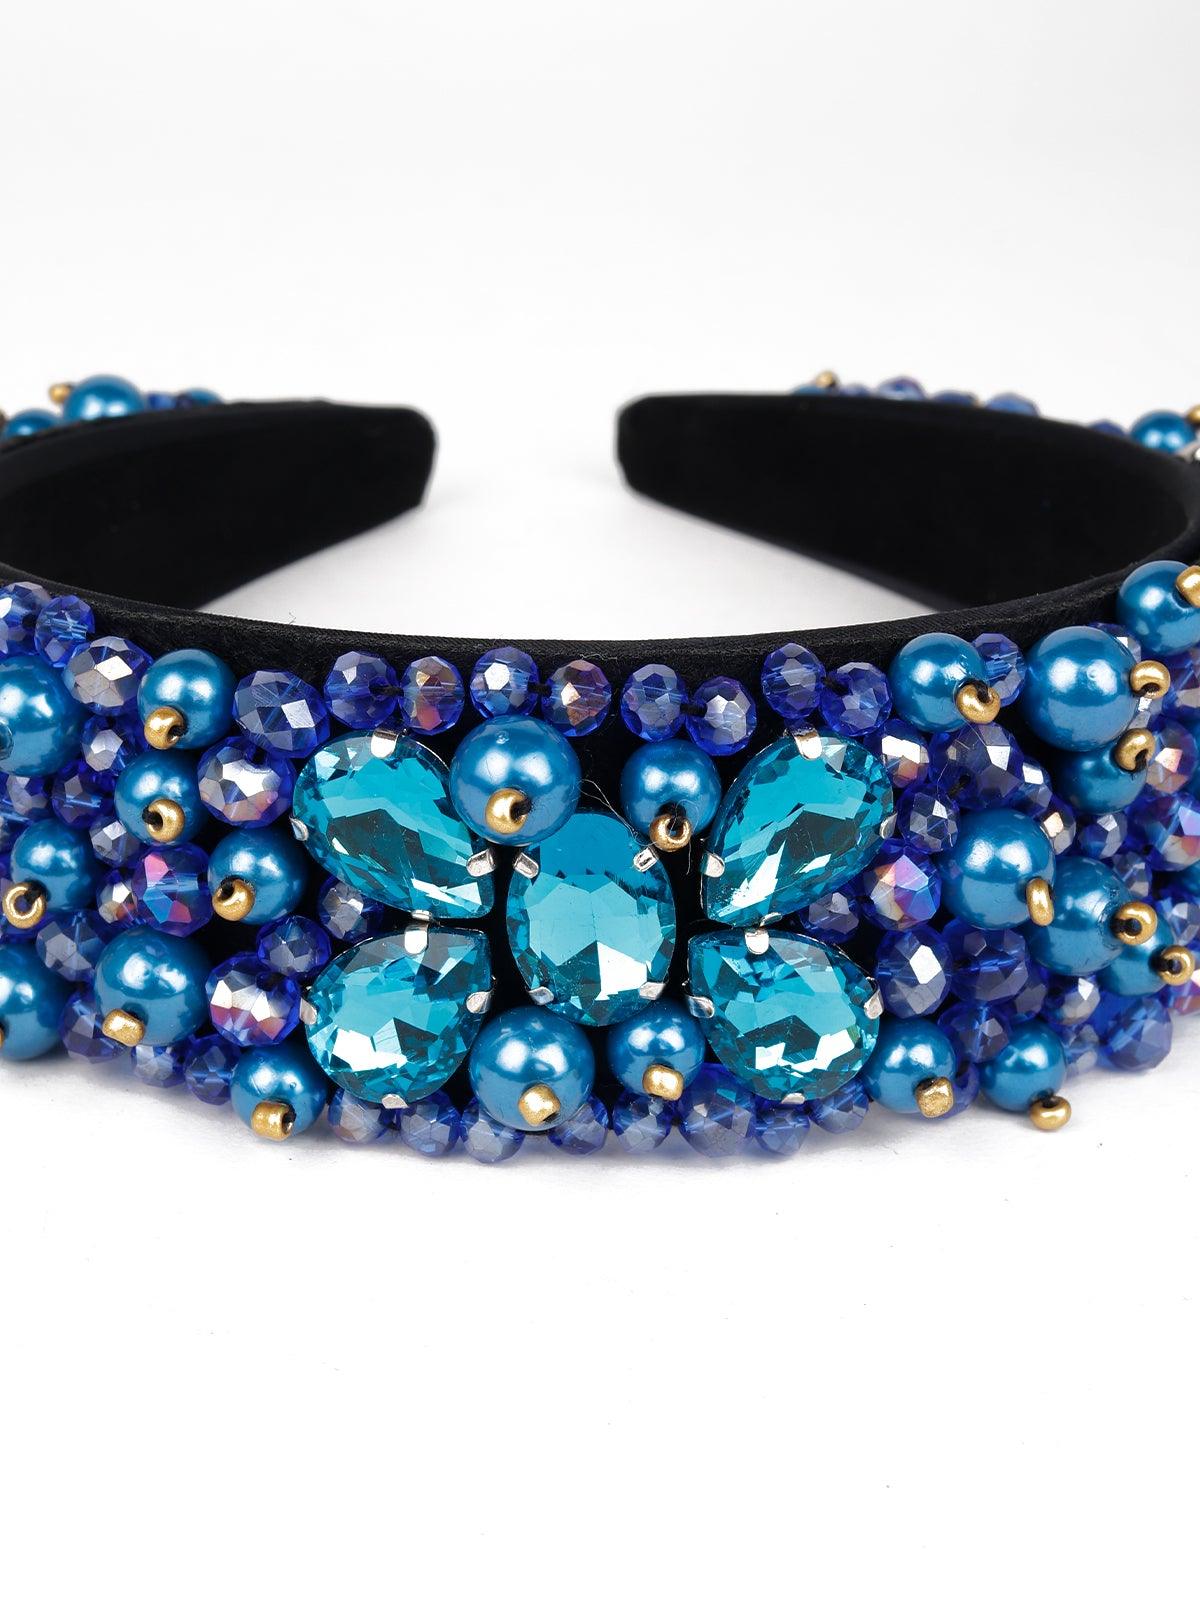 Vibrant Blue Beaded Hairband - Odette